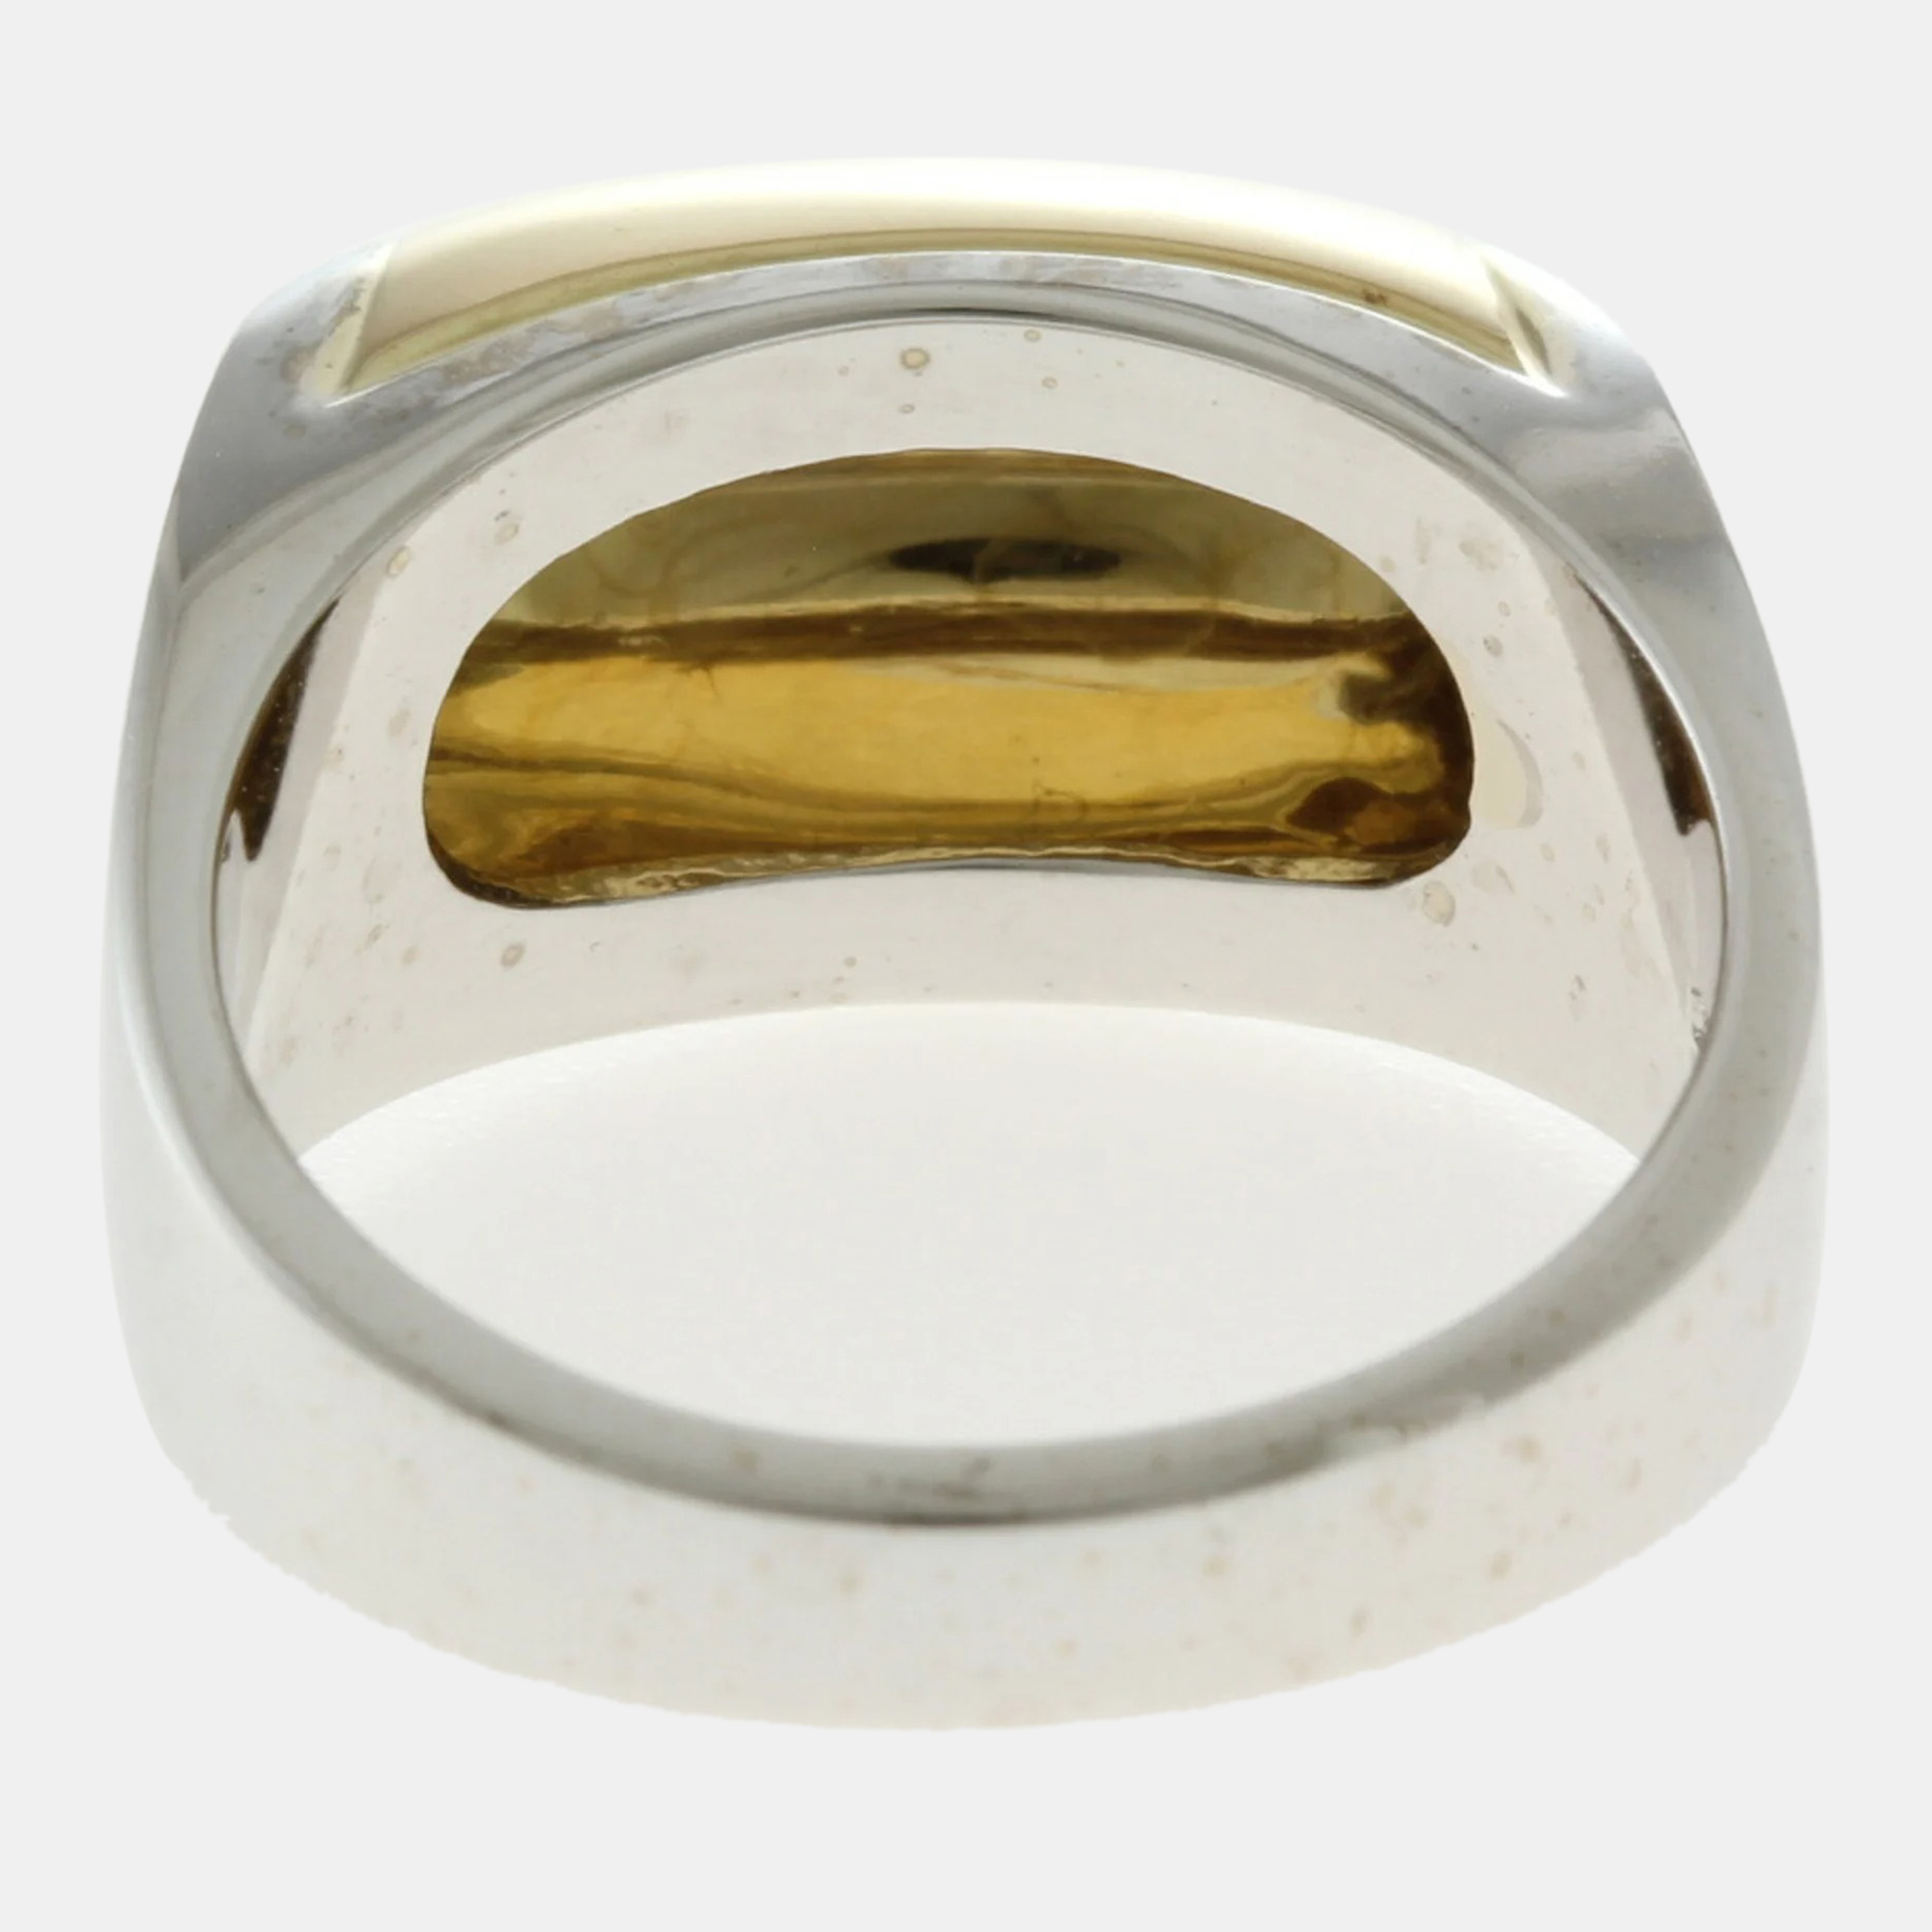 Bvlgari 18K White And Yellow Gold Tronchetto Ring EU 65